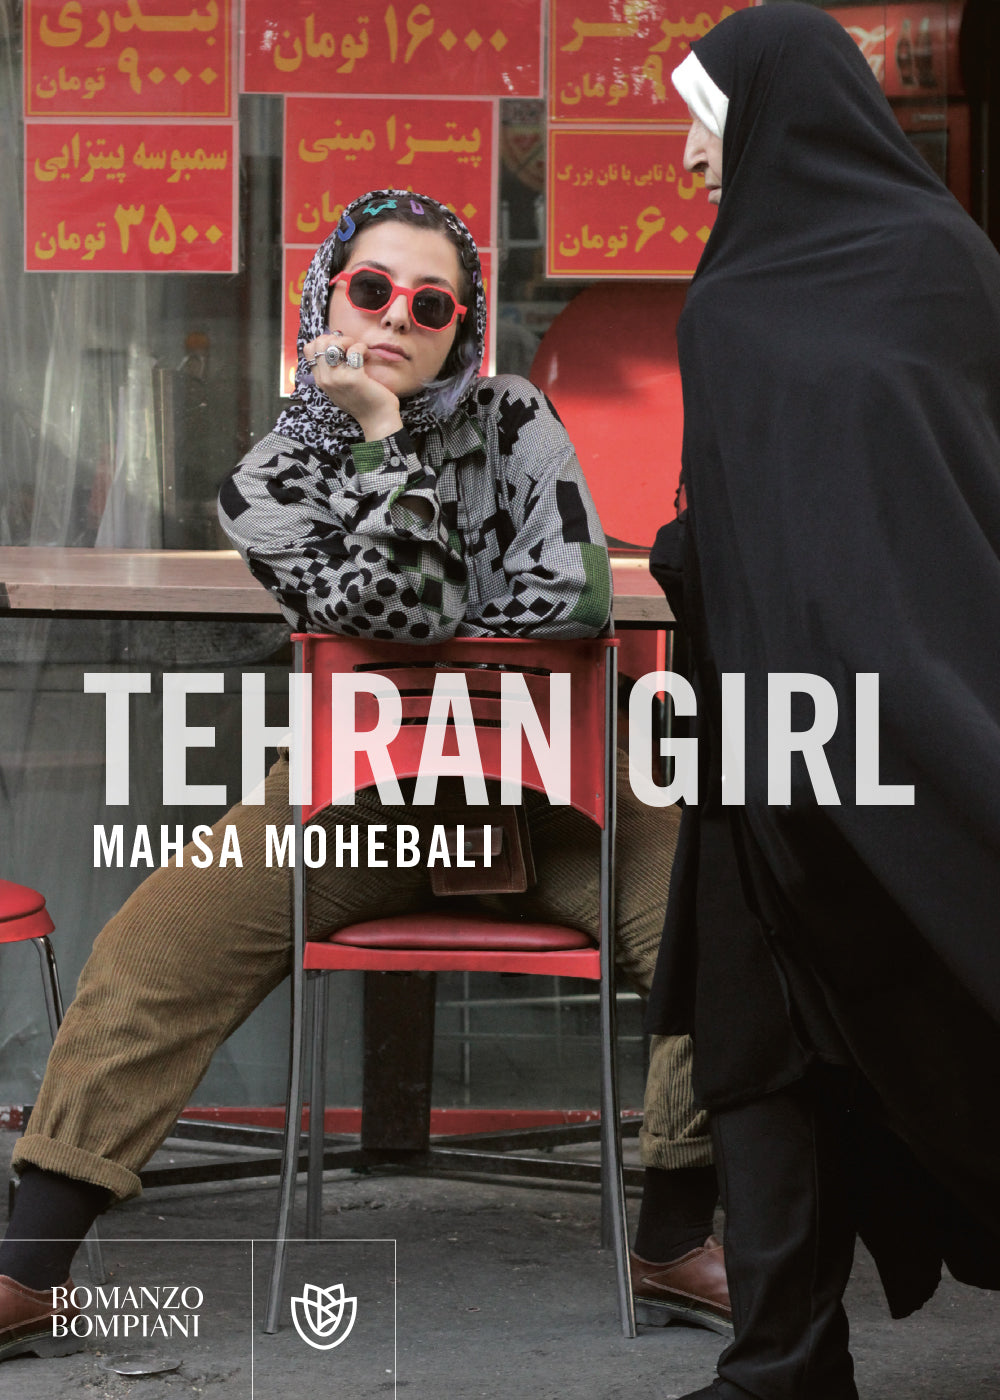 Tehran Girl